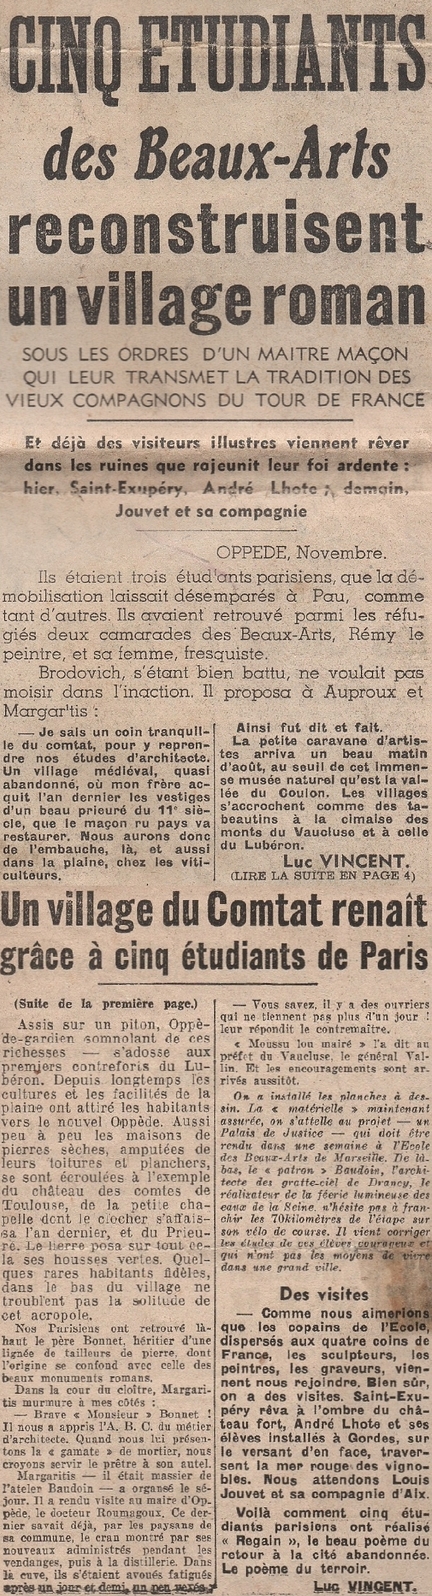 Cinq tudiants des Beaux-Arts reconstruisent un village roman - Paris-soir, 19 novembre 1940